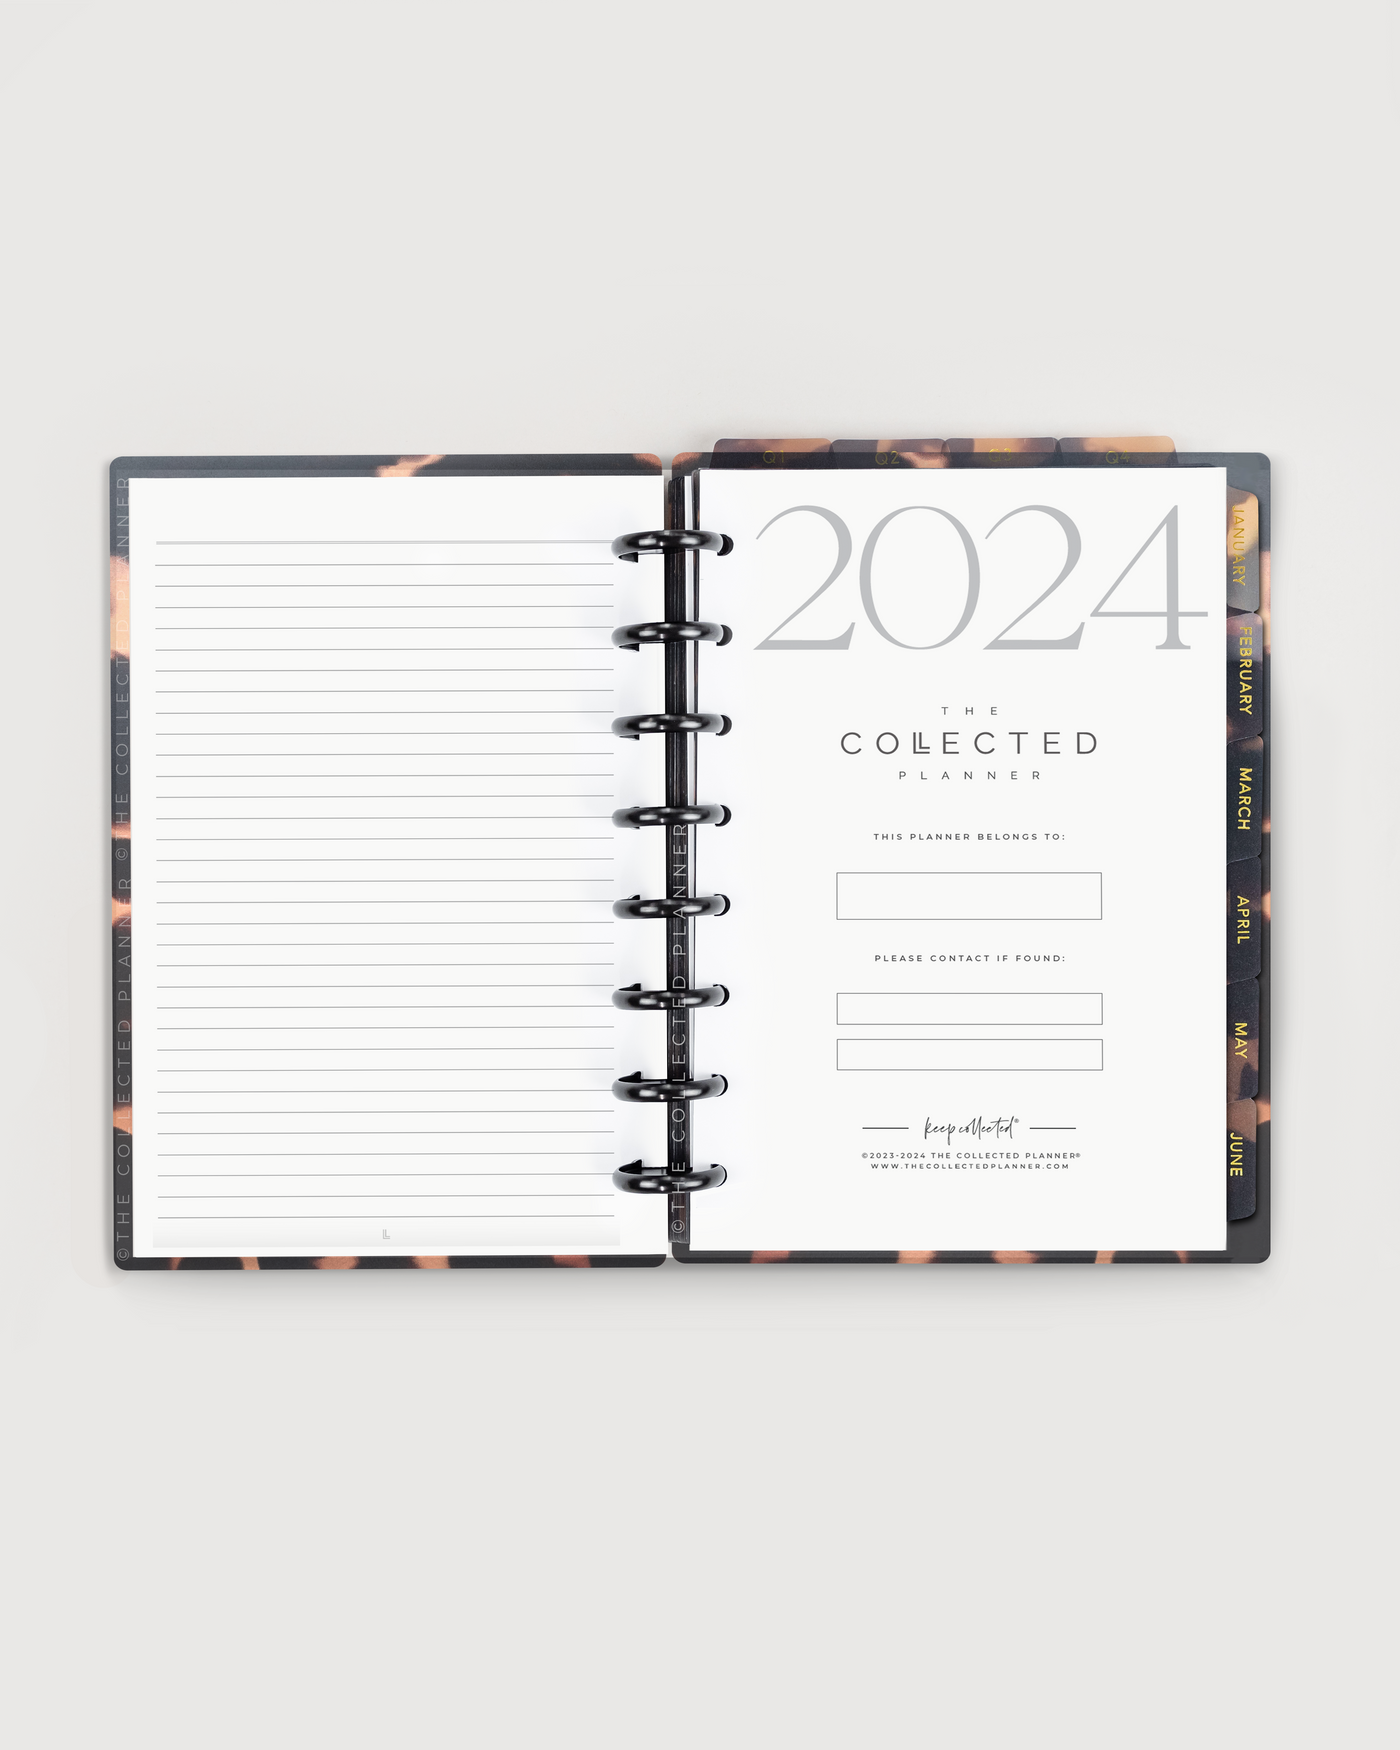 2024 Terrazzo Annual Planner - Productivity Edition